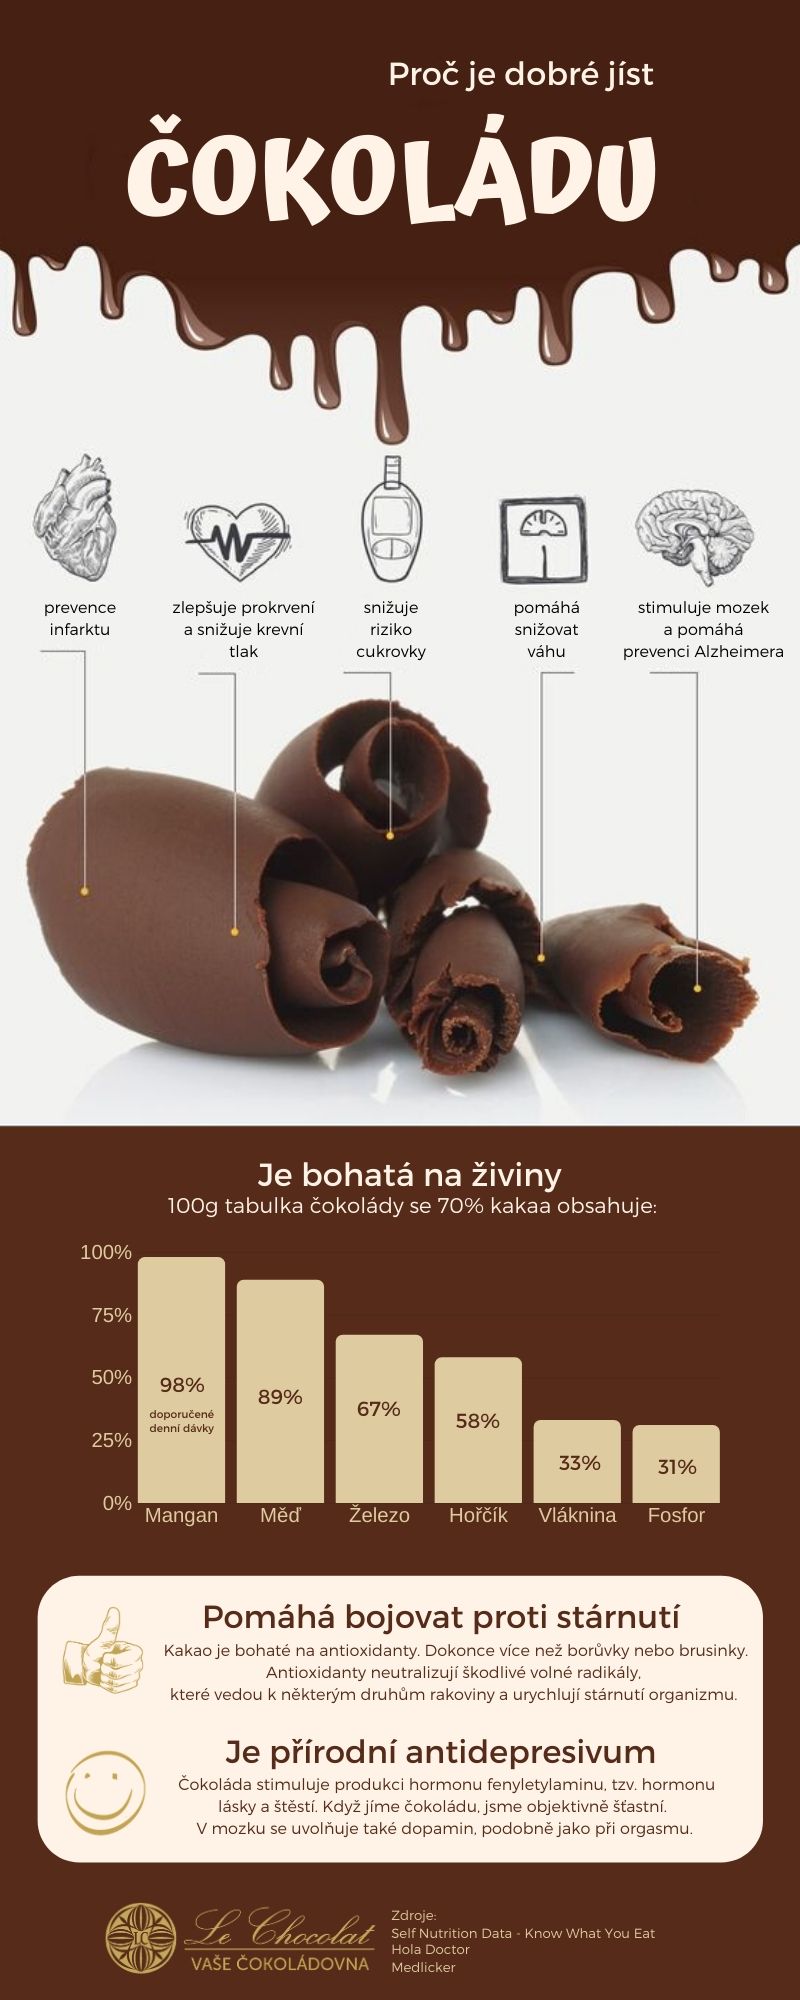 Proč nejíst čokoládu?